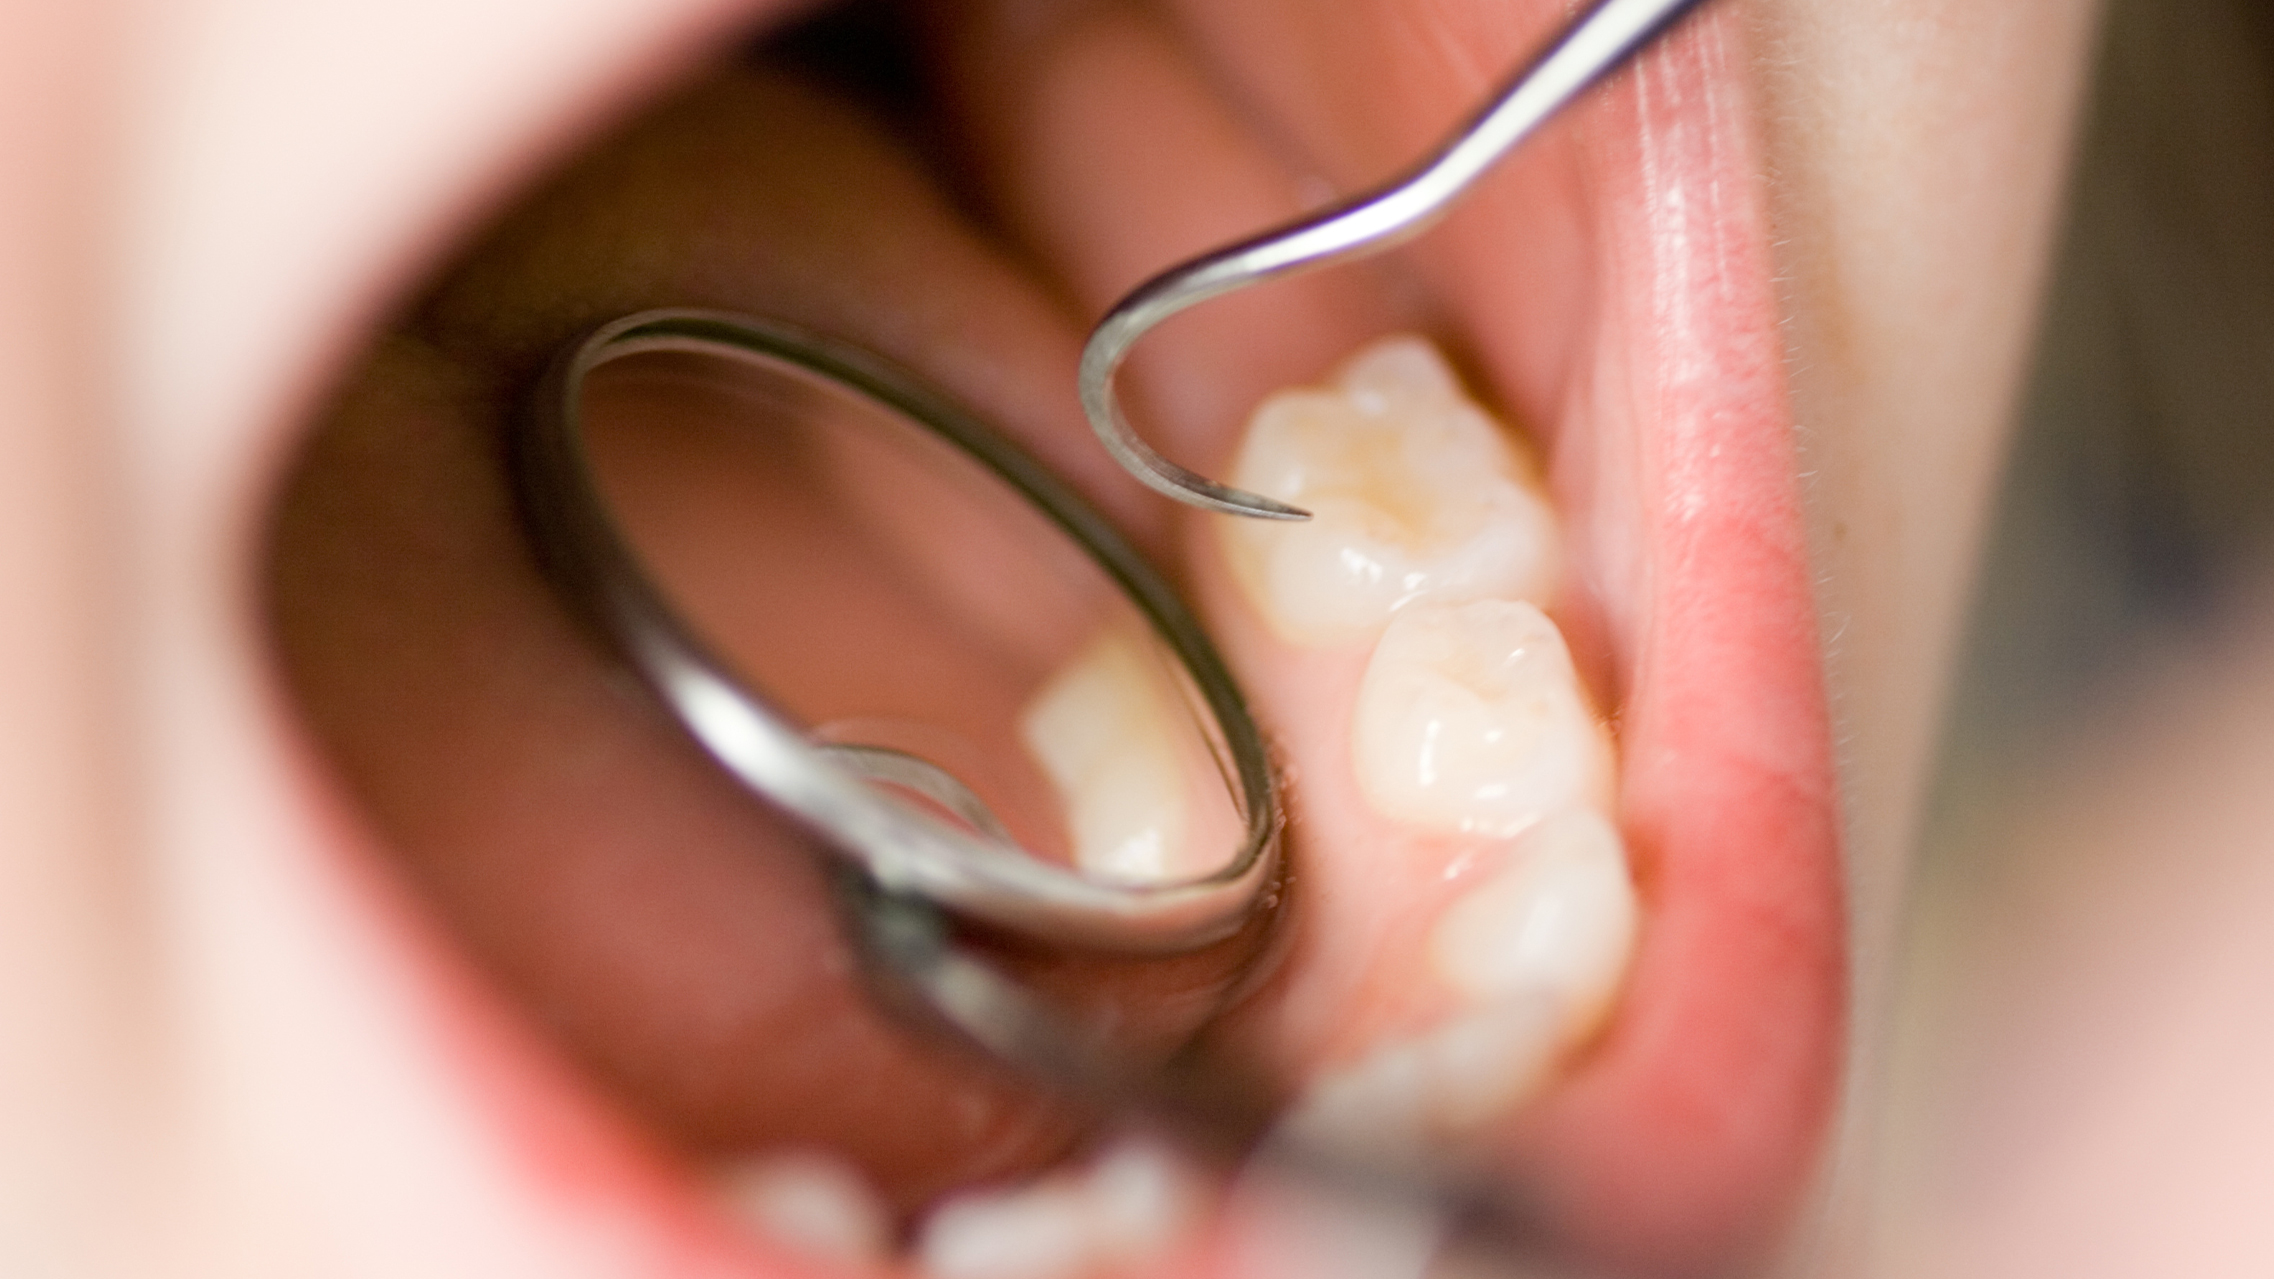 Molaren-Inzisiven-Hypomineralisation (MIH) – Wenn Zähne bröseln